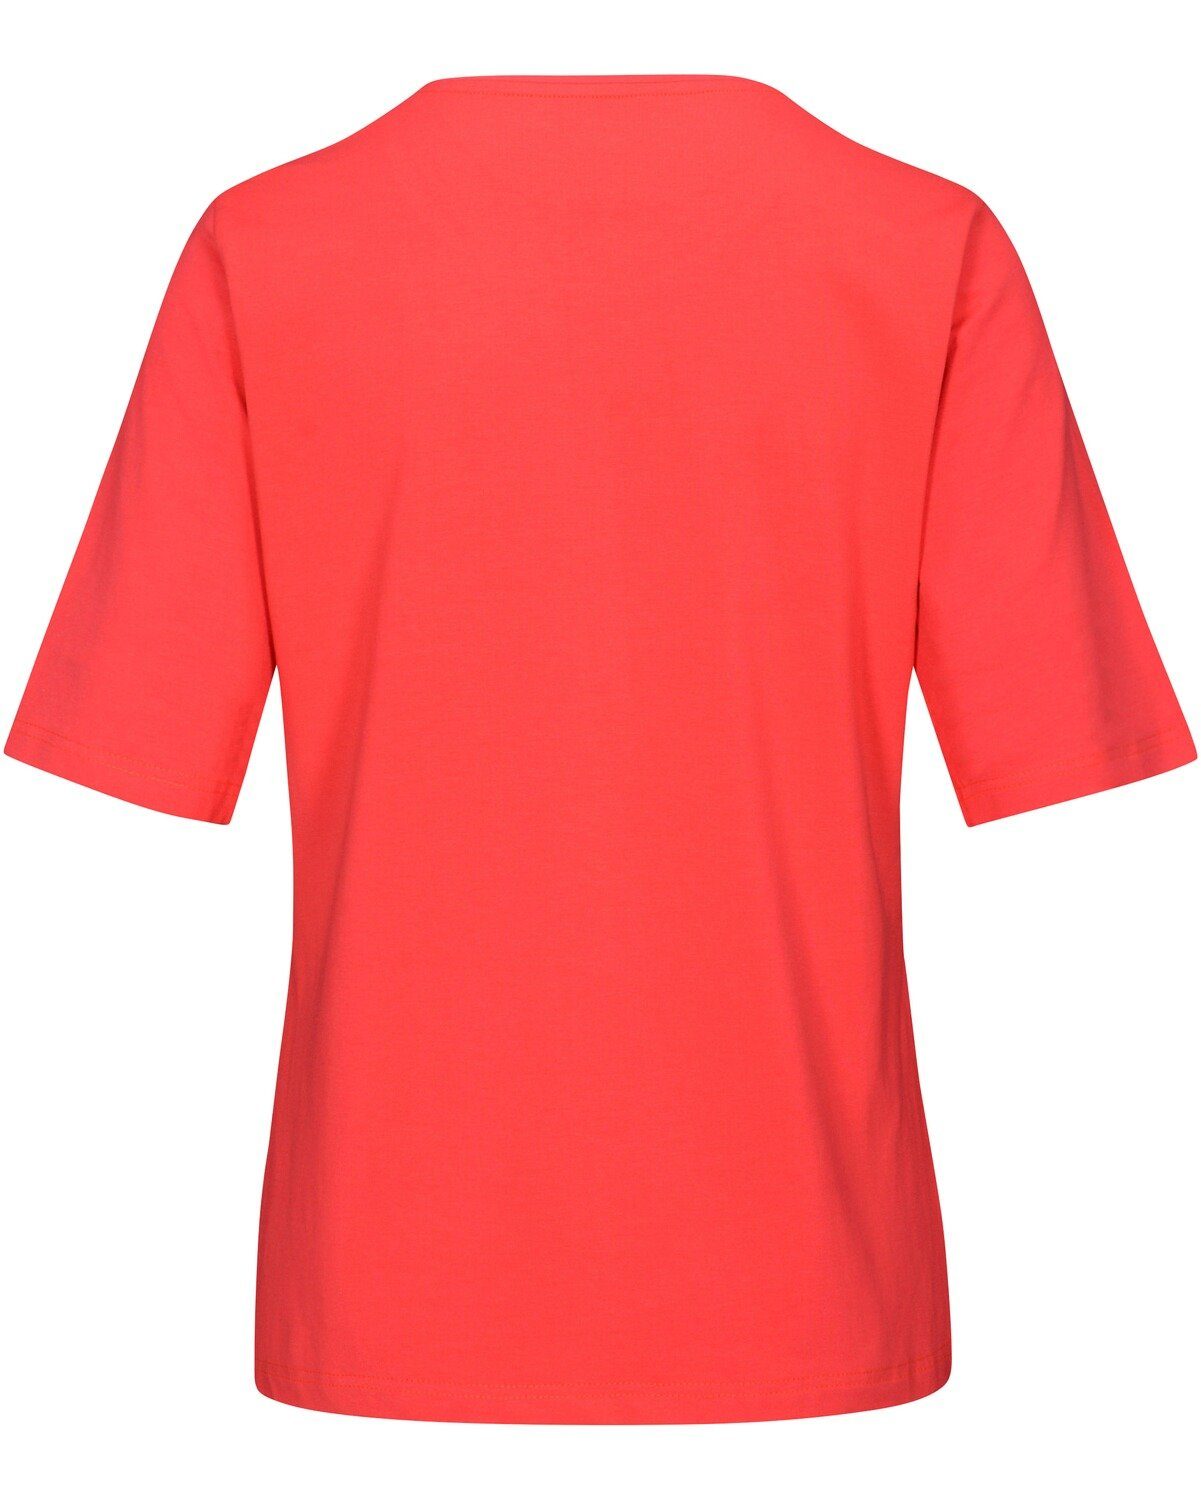 Rot Halbarm-Shirt T-Shirt Clarina